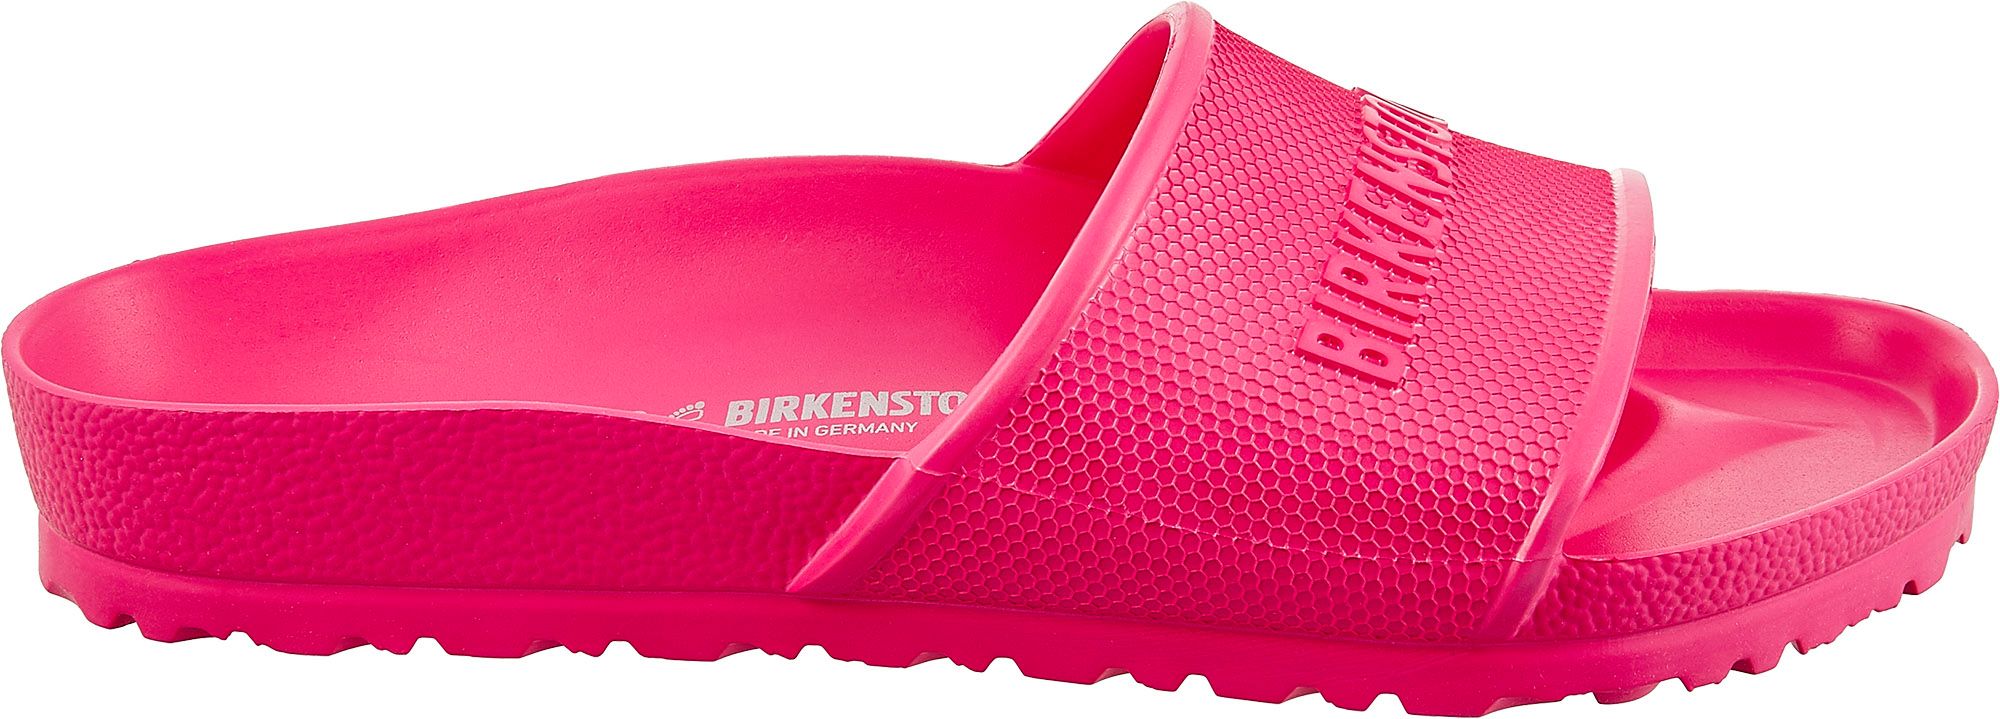 birkenstock in pink